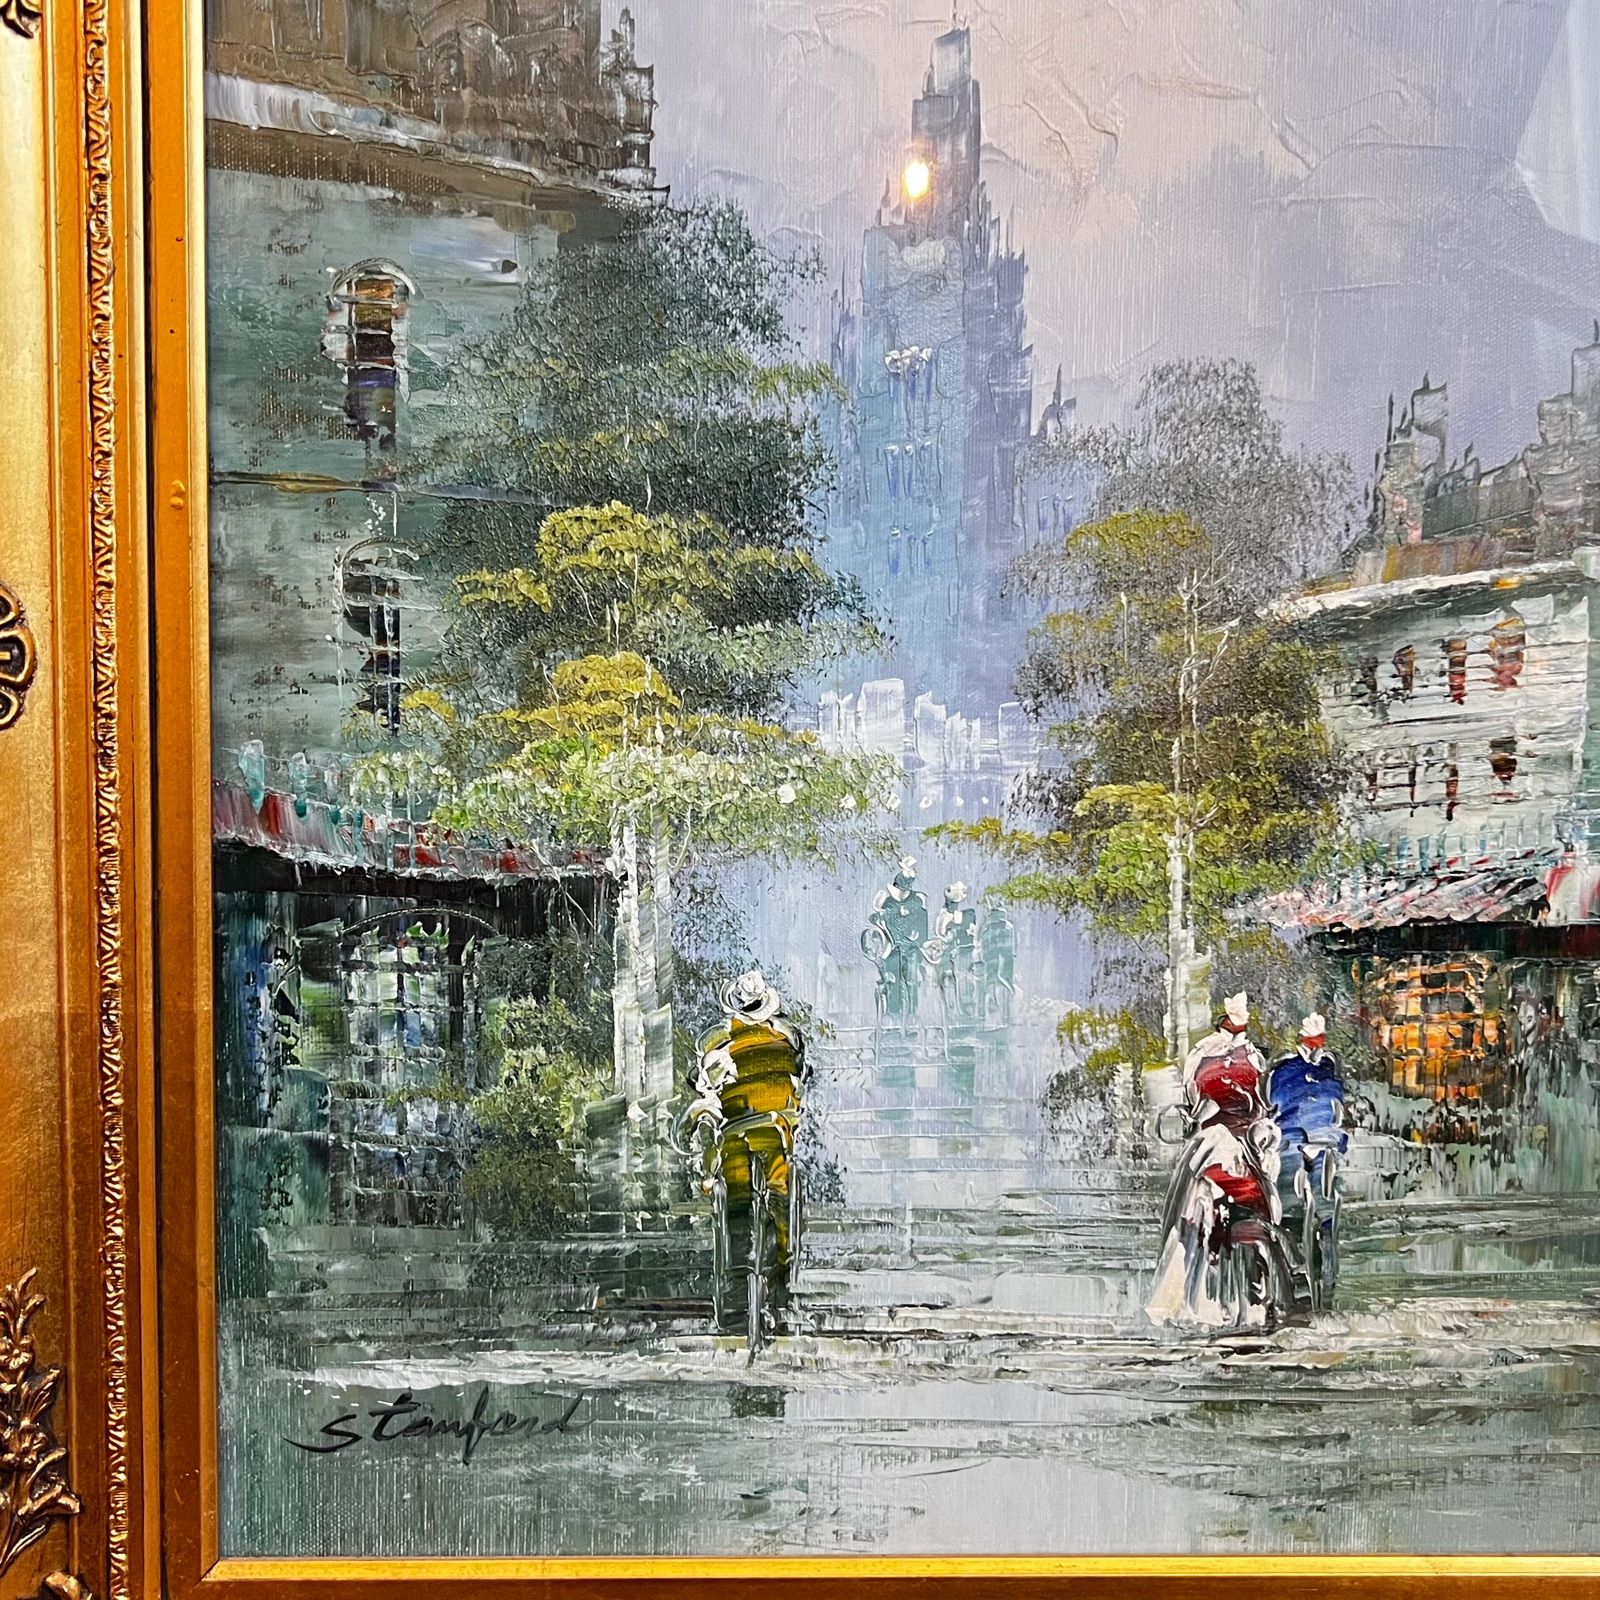 ヨーロッパの街並みを描いた絵画 stanford 油彩画《ヨーロッパ街並風景 